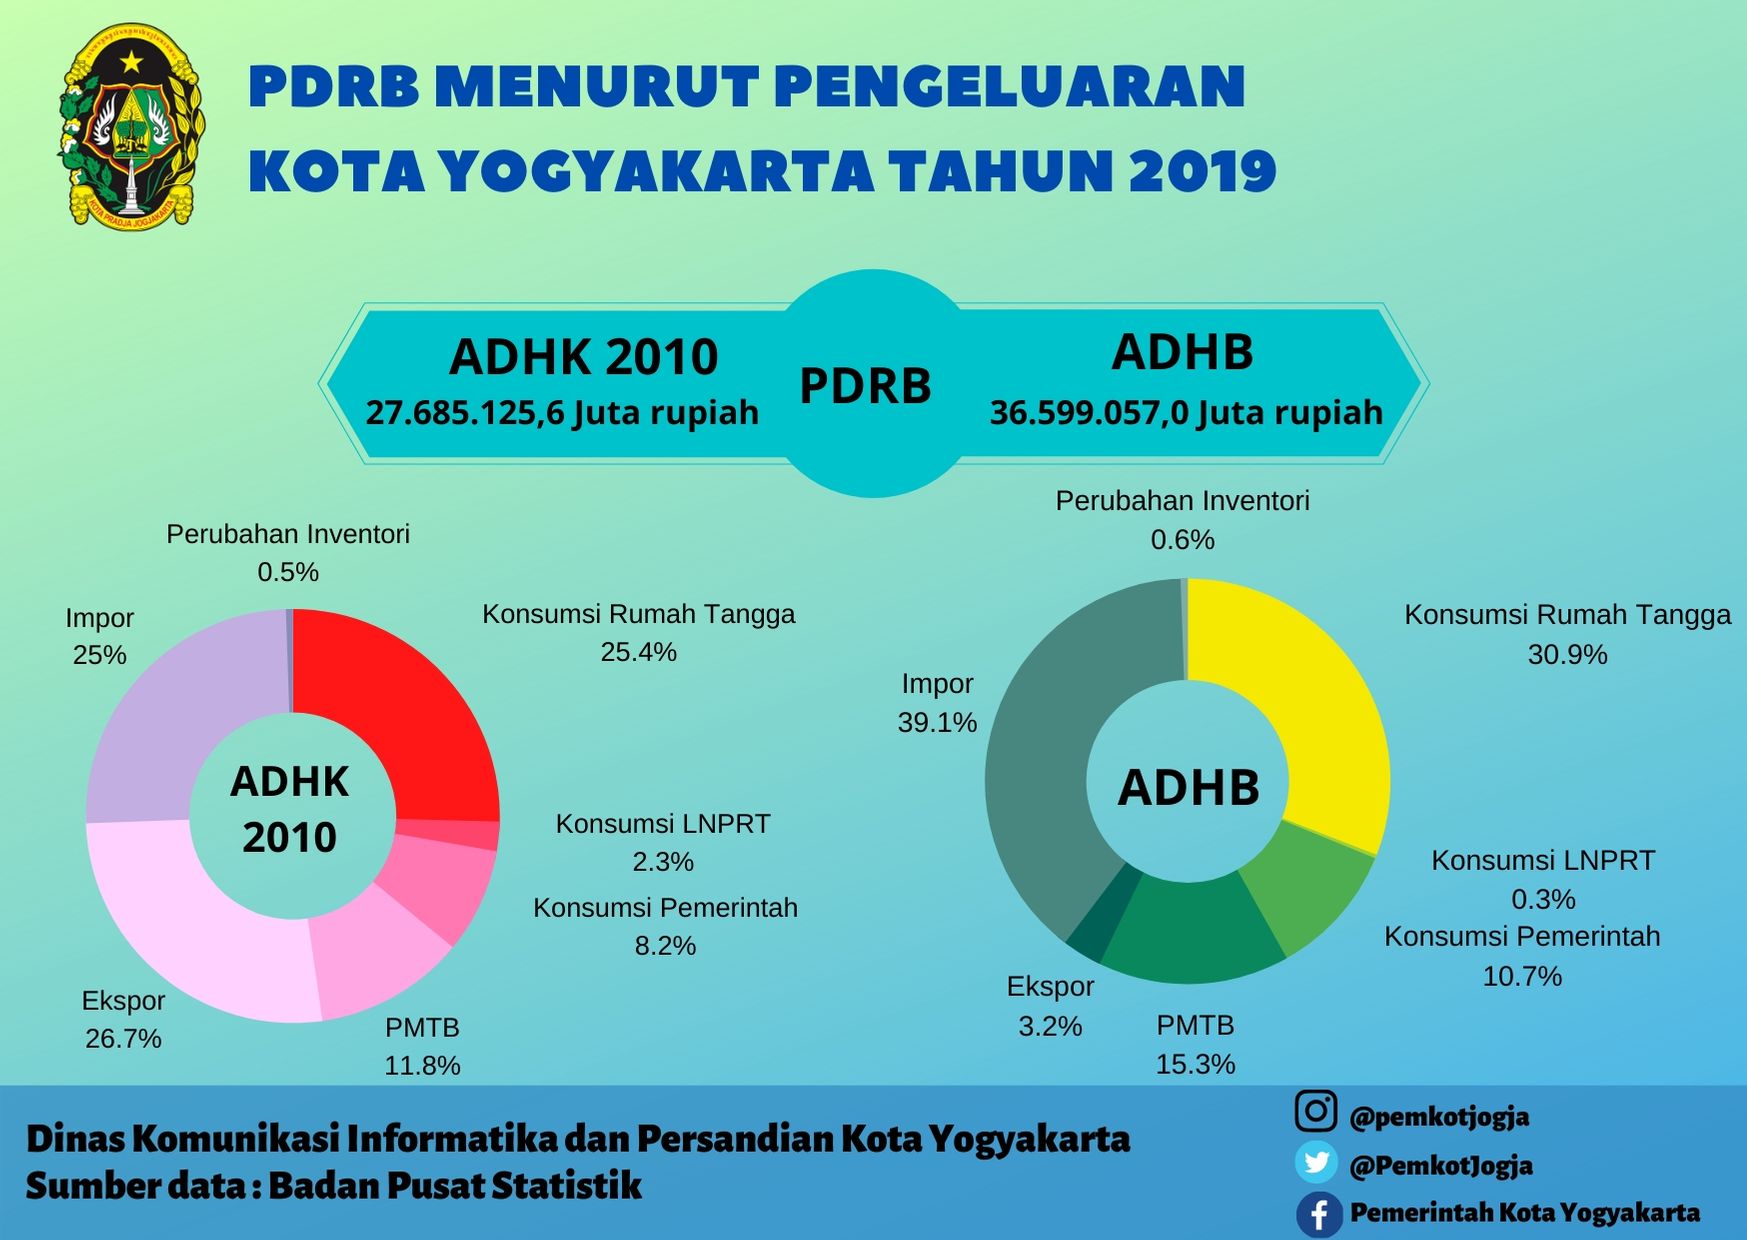 PDRB Menurut Pengeluaran Kota Yogyakarta Tahun 2019